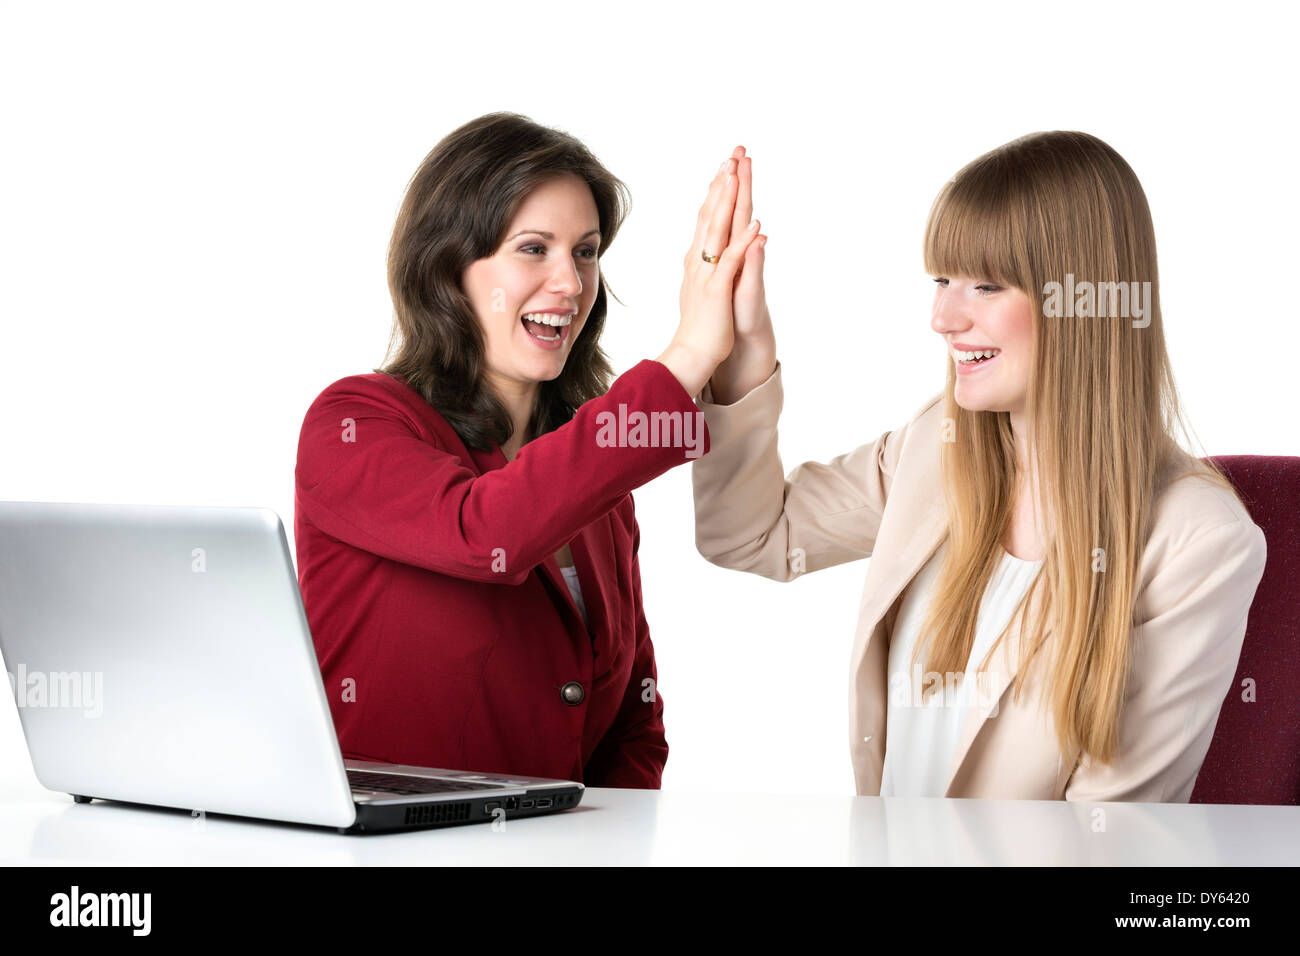 Zwei glückliche Frauen blond und brünett, sitzen zusammen vor einem laptop Stockfoto